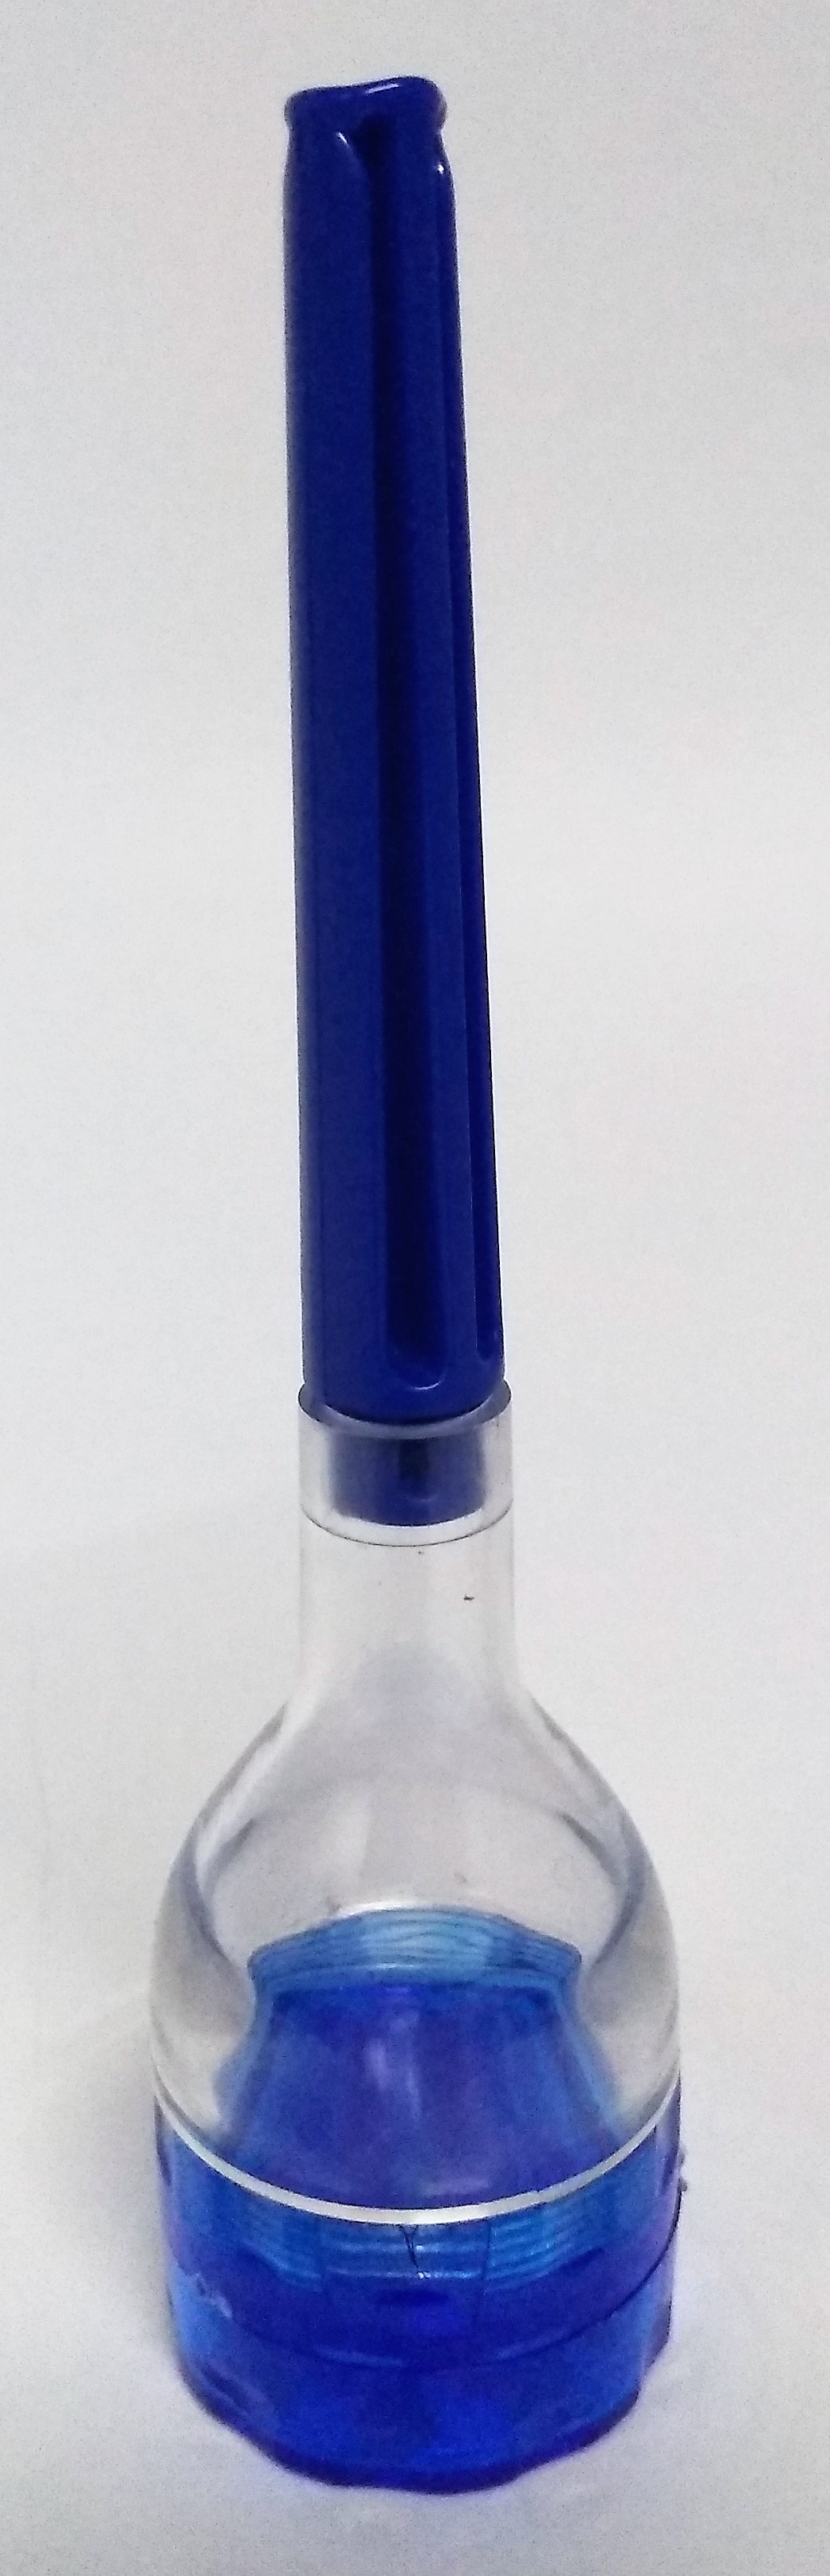 Triturador Acrílico Cone Azul